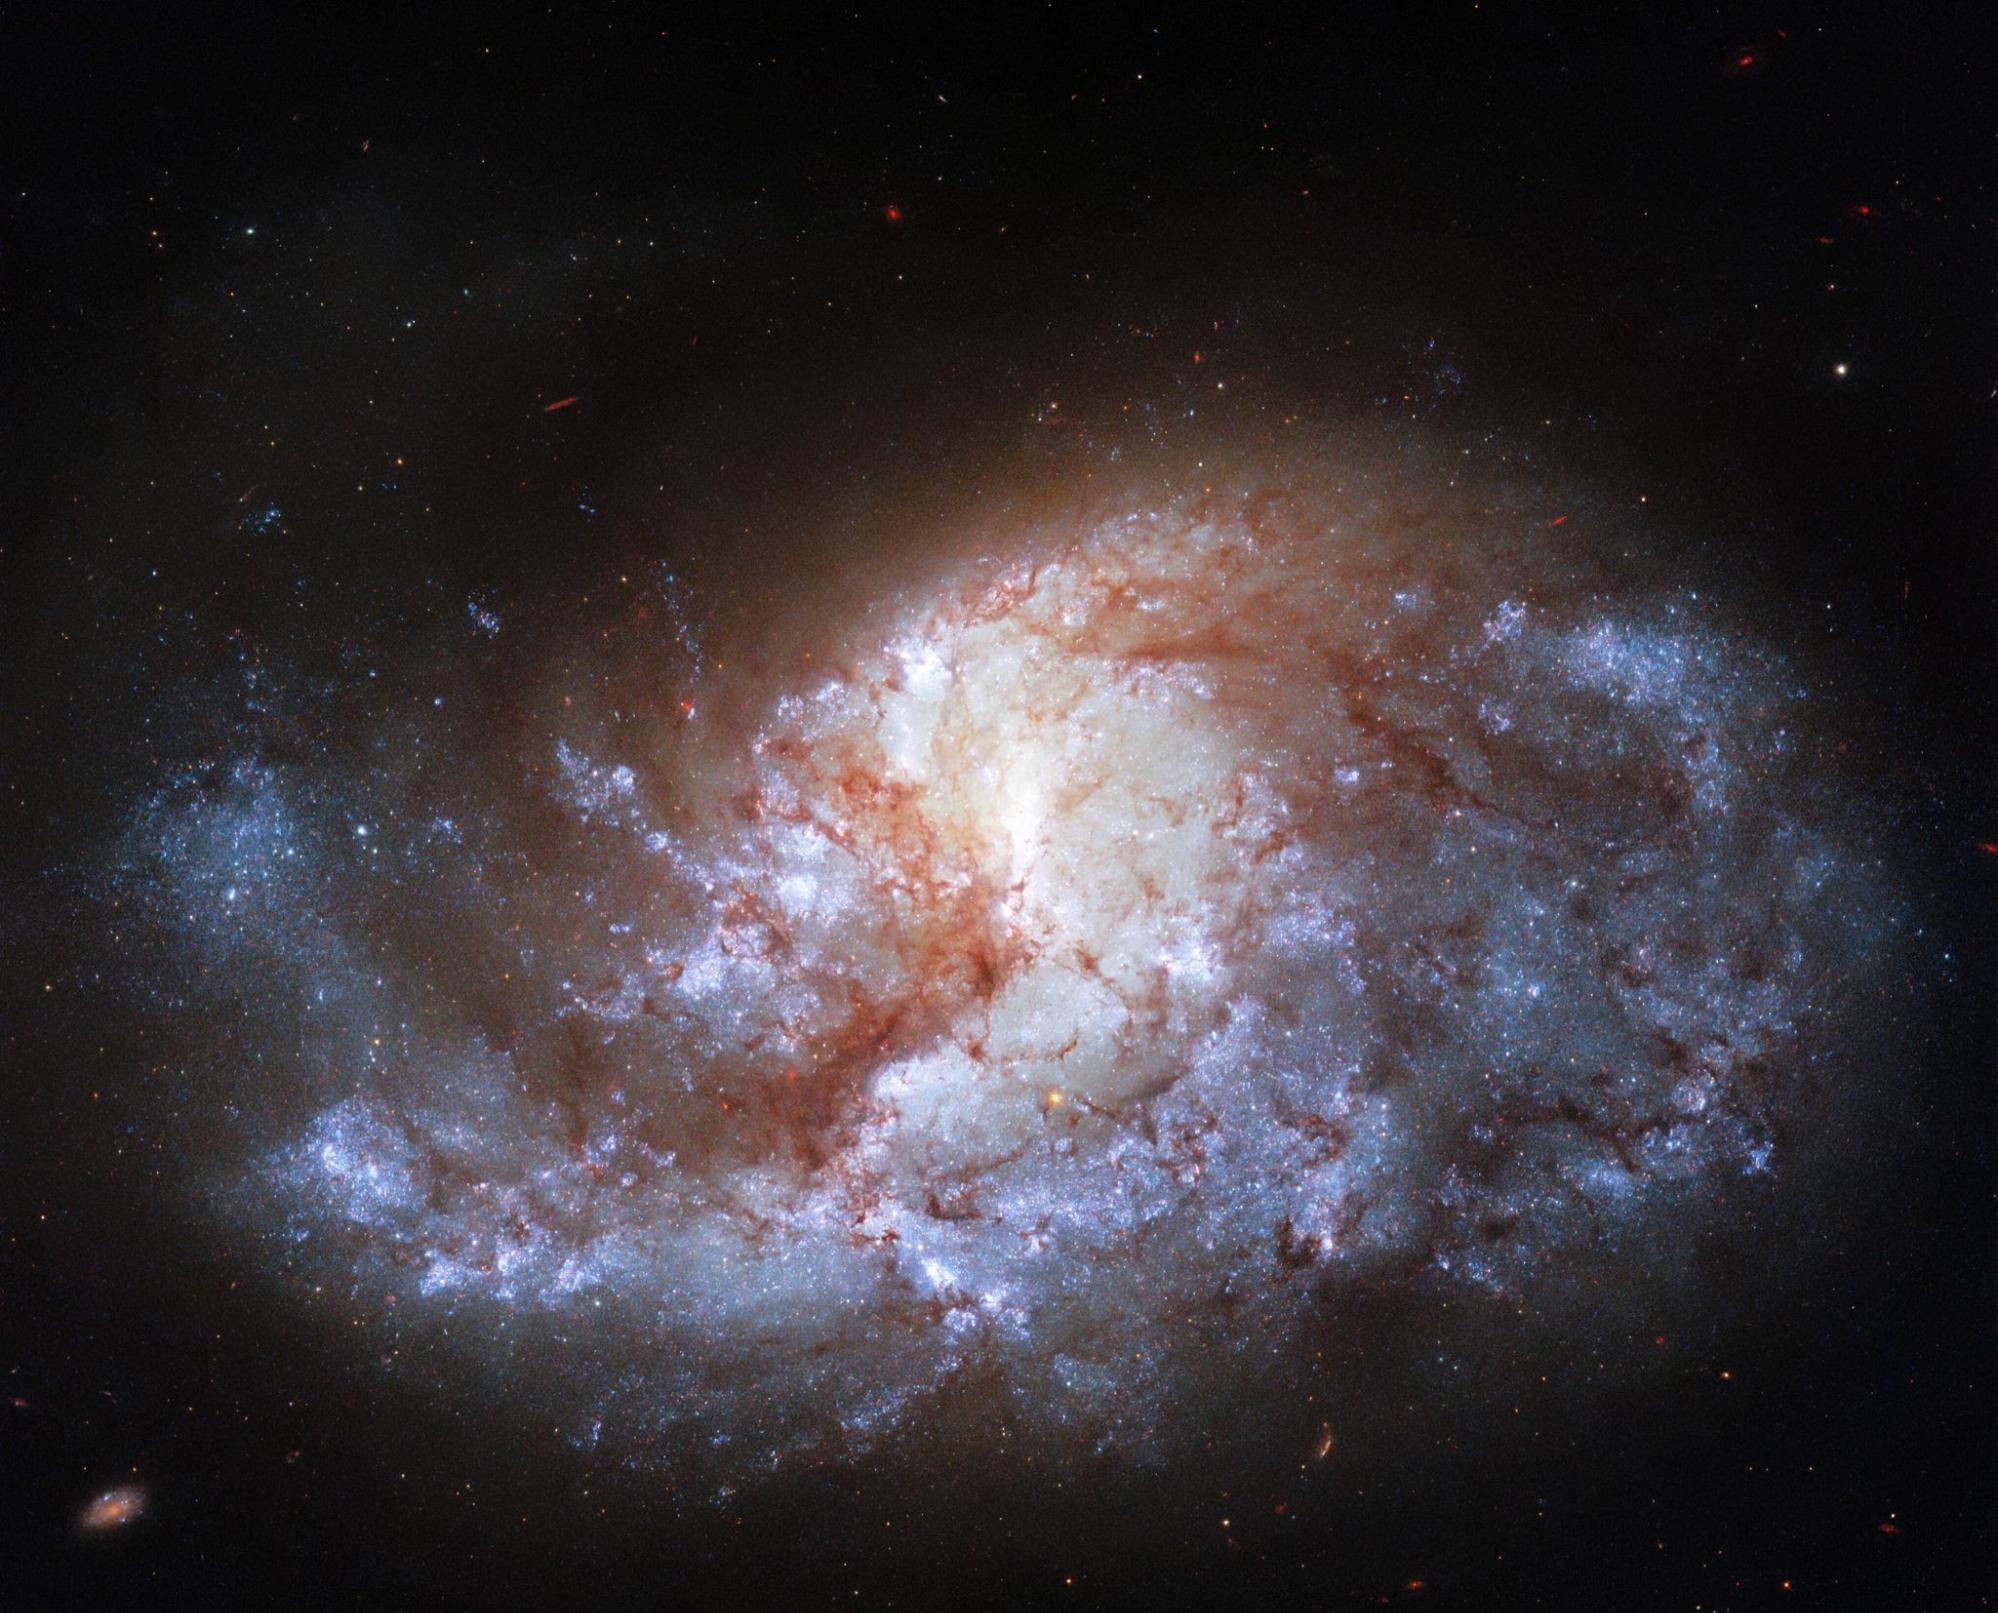 哈勃太空望远镜拍摄的宝石般明亮的天炉座NGC 1385